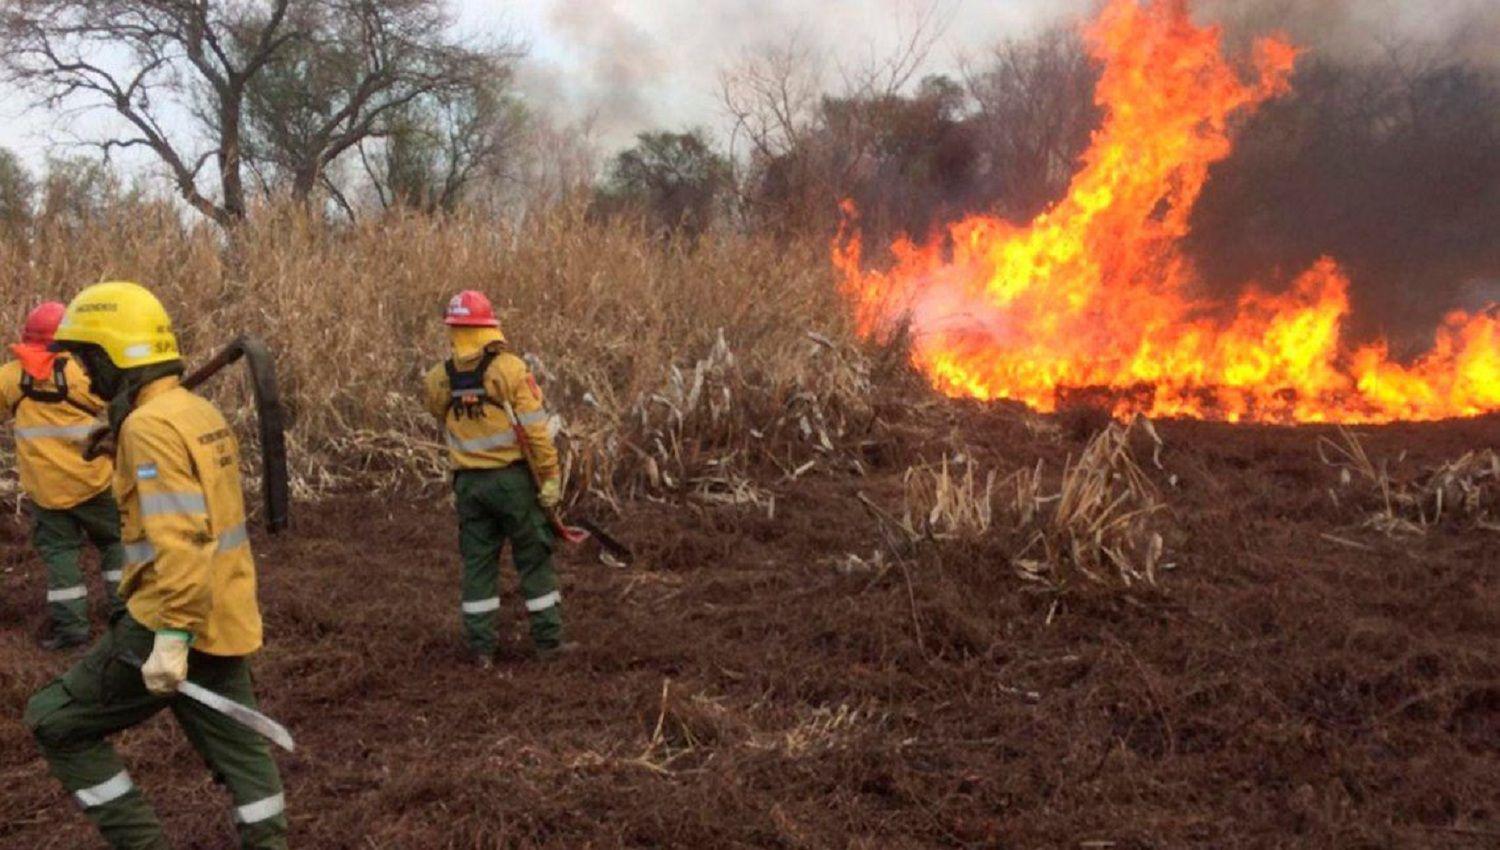 Chubut y tres provincias maacutes continuacutean con focos de incendios forestales activos